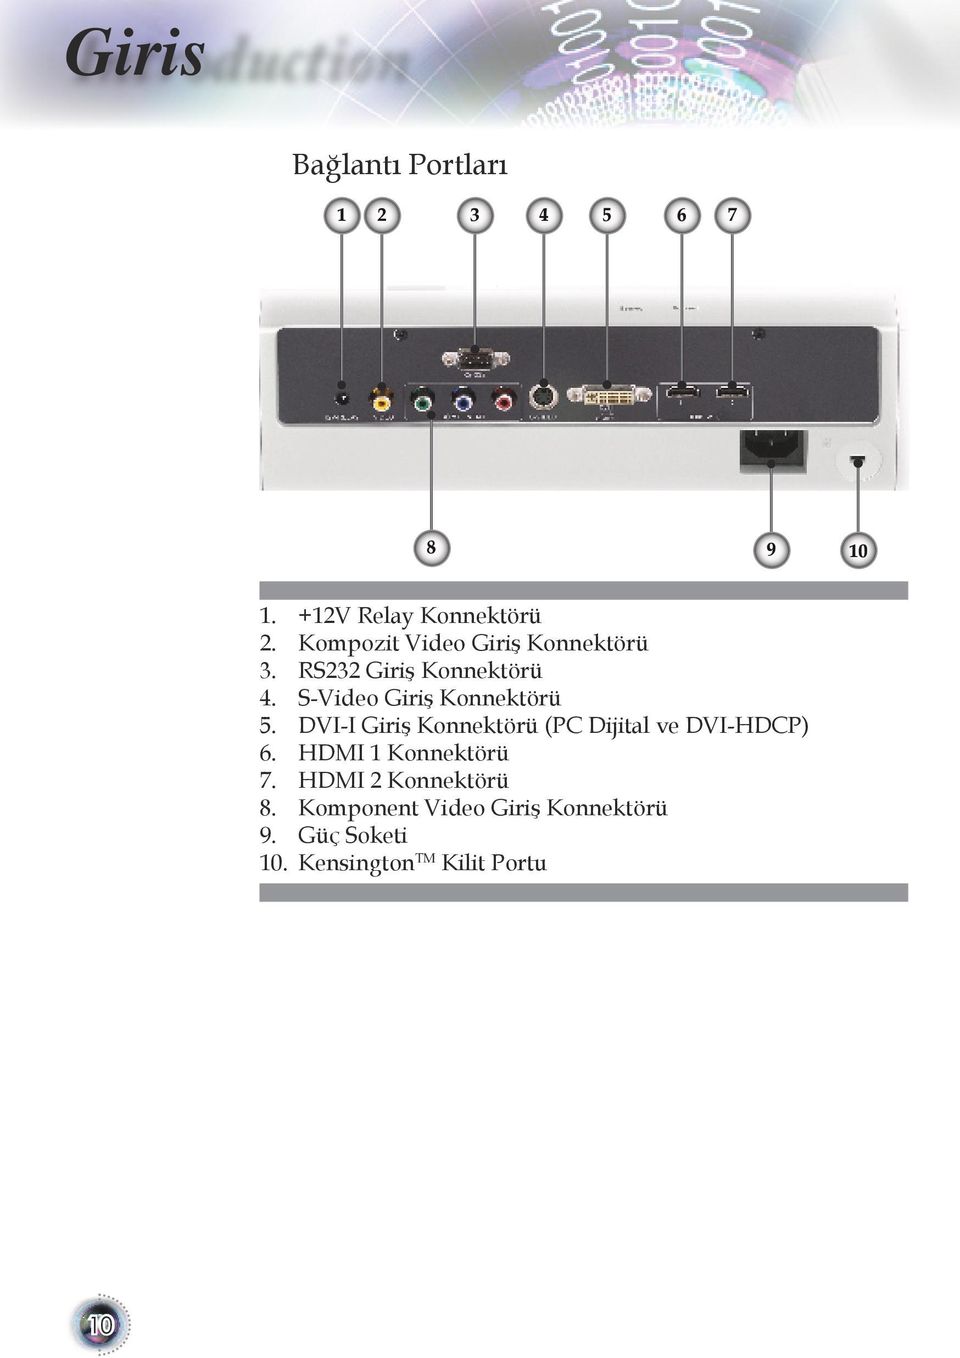 S-Video Giriş Konnektörü 5. DVI-I Giriş Konnektörü (PC Dijital ve DVI-HDCP) 6.